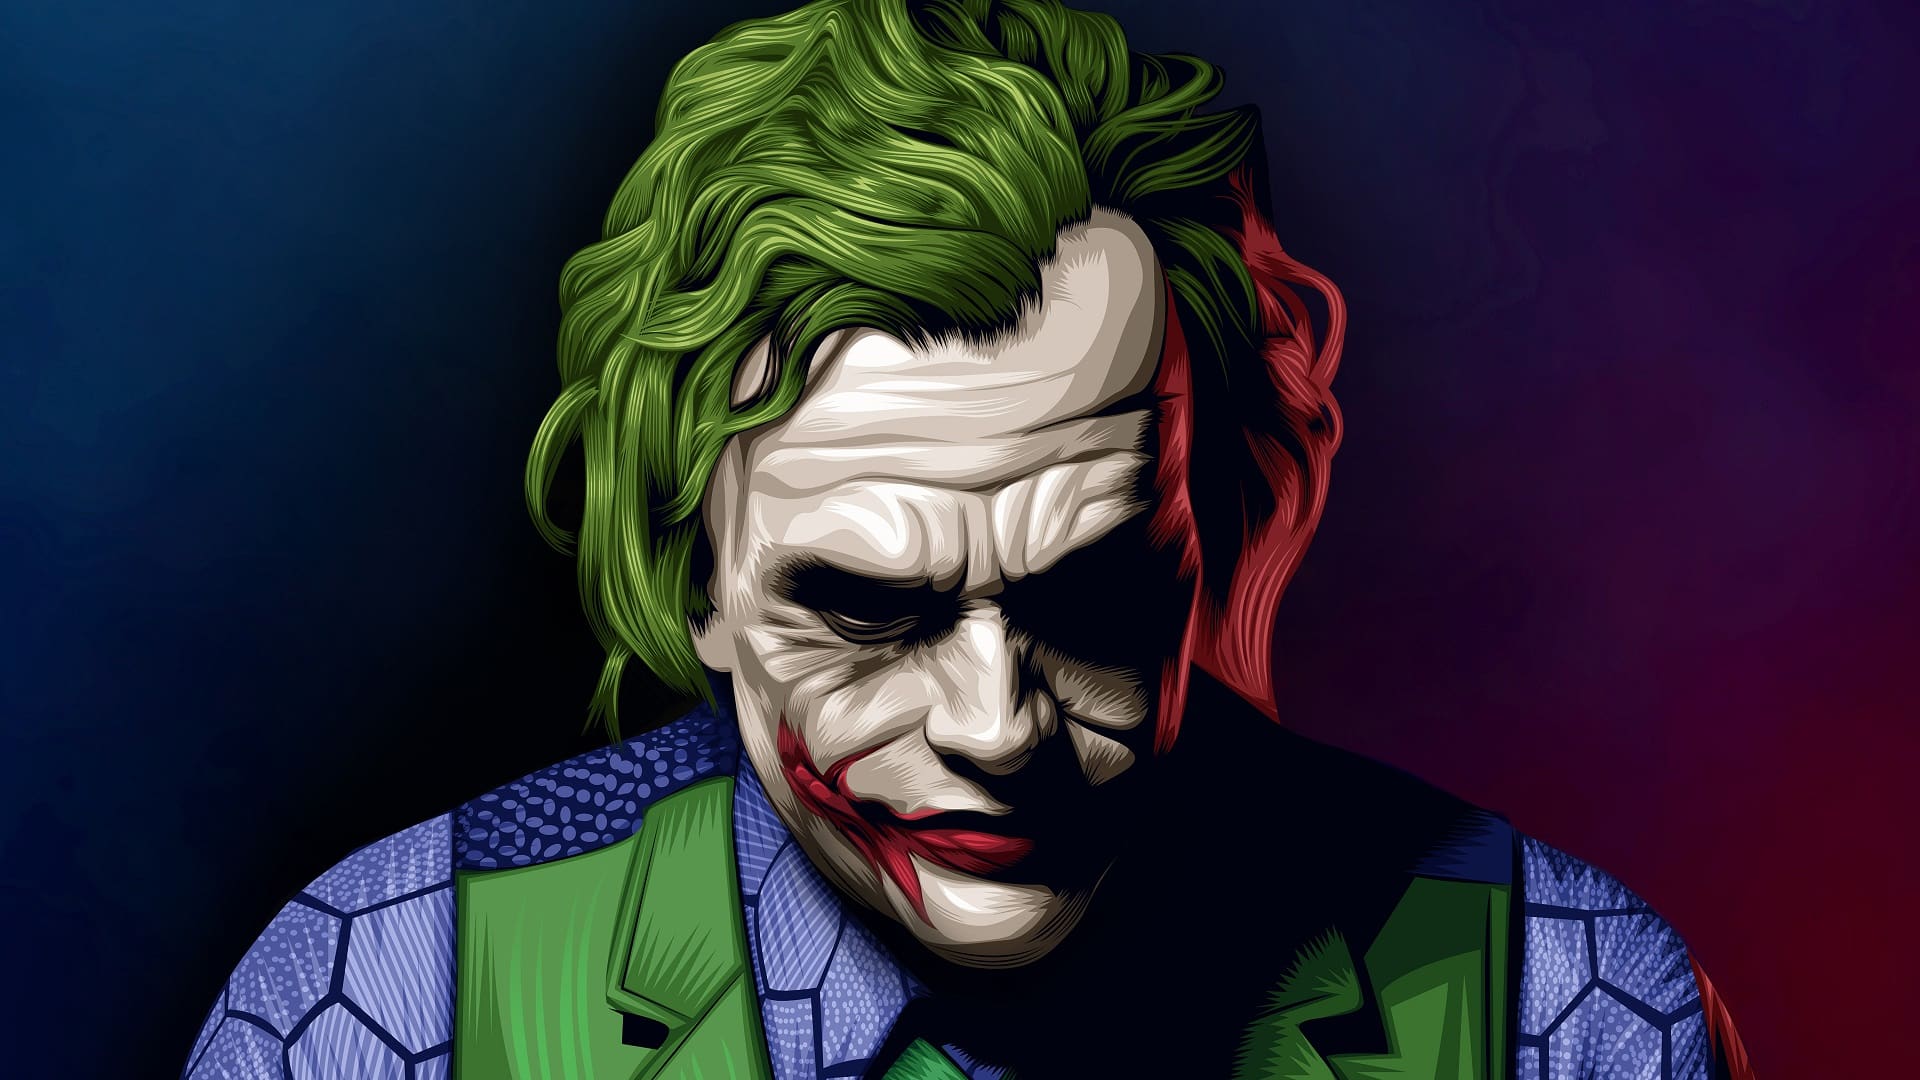 Joker Face Images  Free Download on Freepik